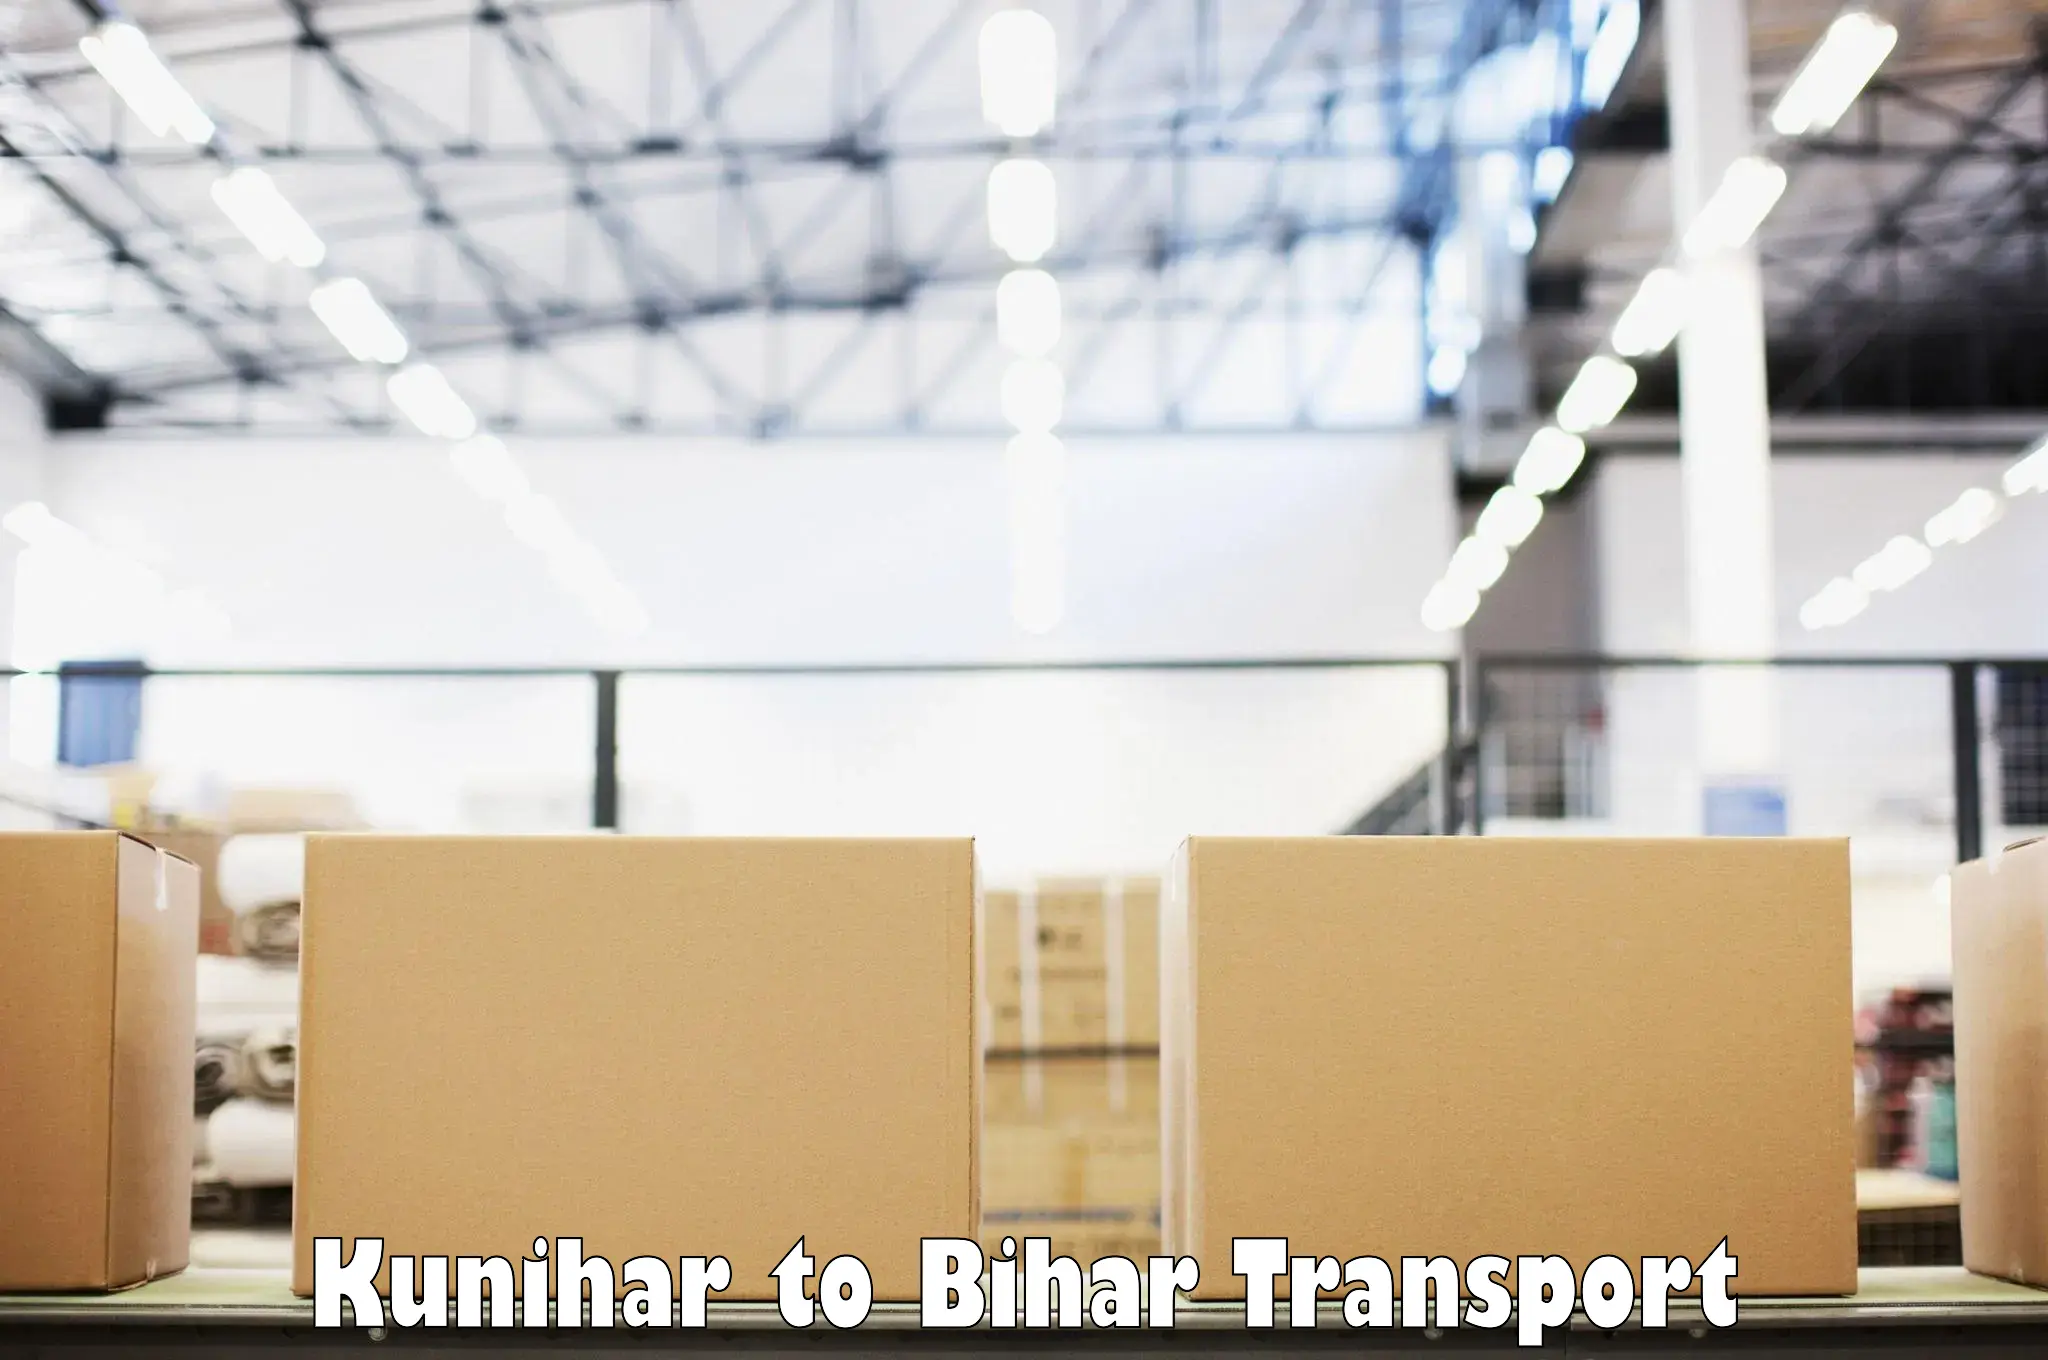 Shipping partner Kunihar to Sudhani